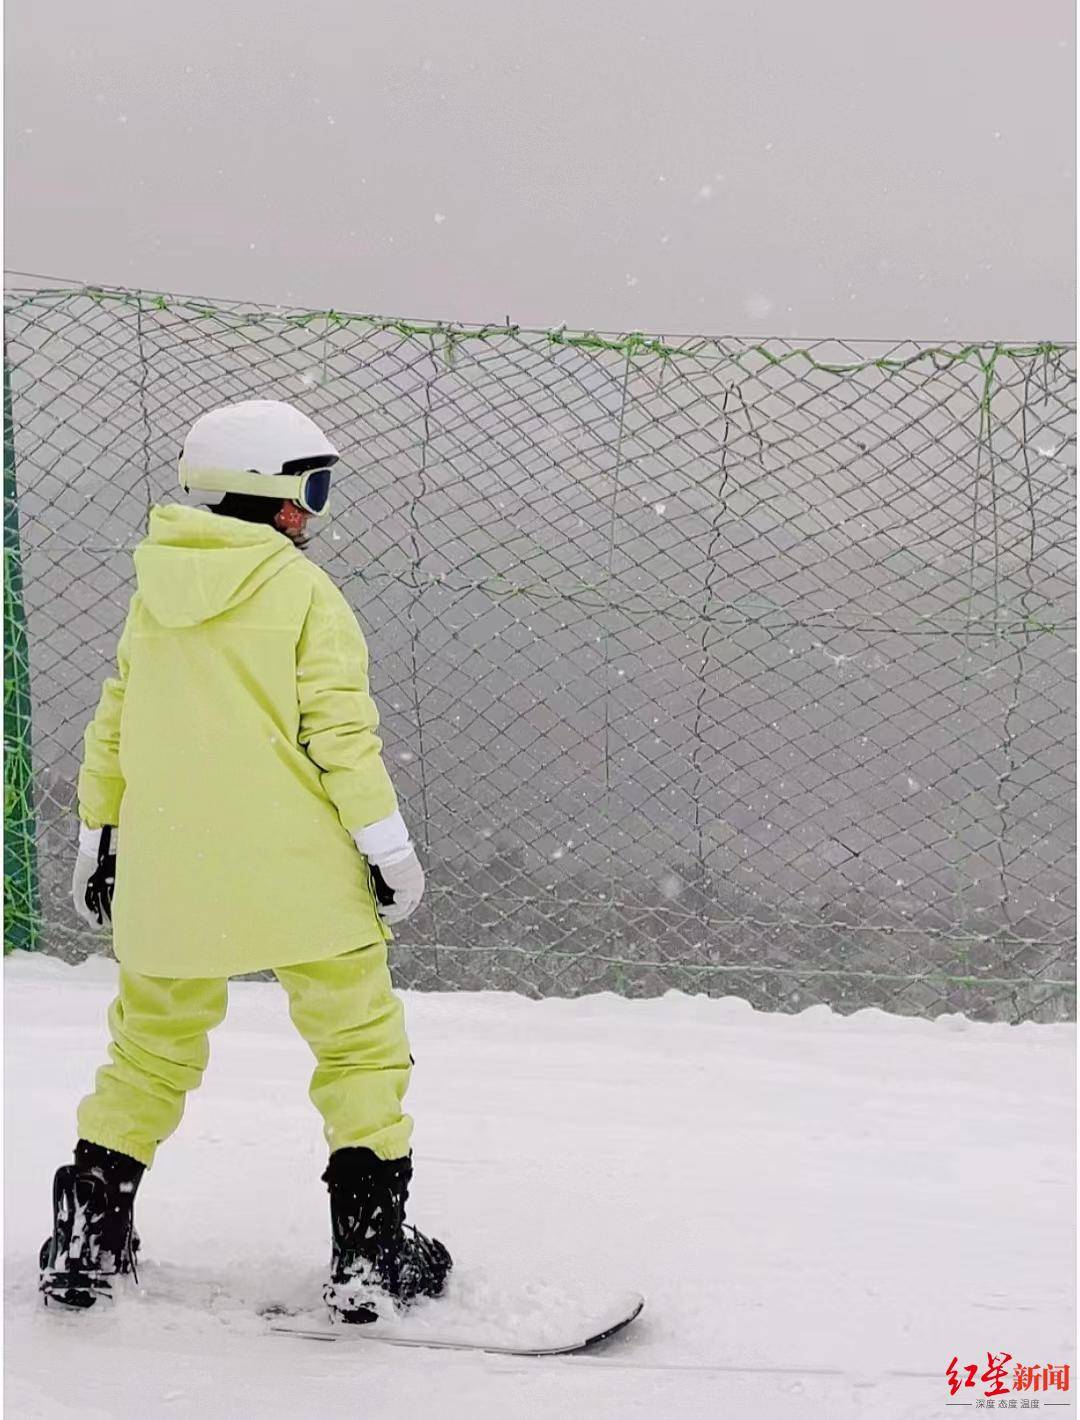 顶级滑雪教练因滑雪跟拍意外身亡滑kok中欧登录入口雪摄影师讲解跟拍时如何保证自身安全(图3)